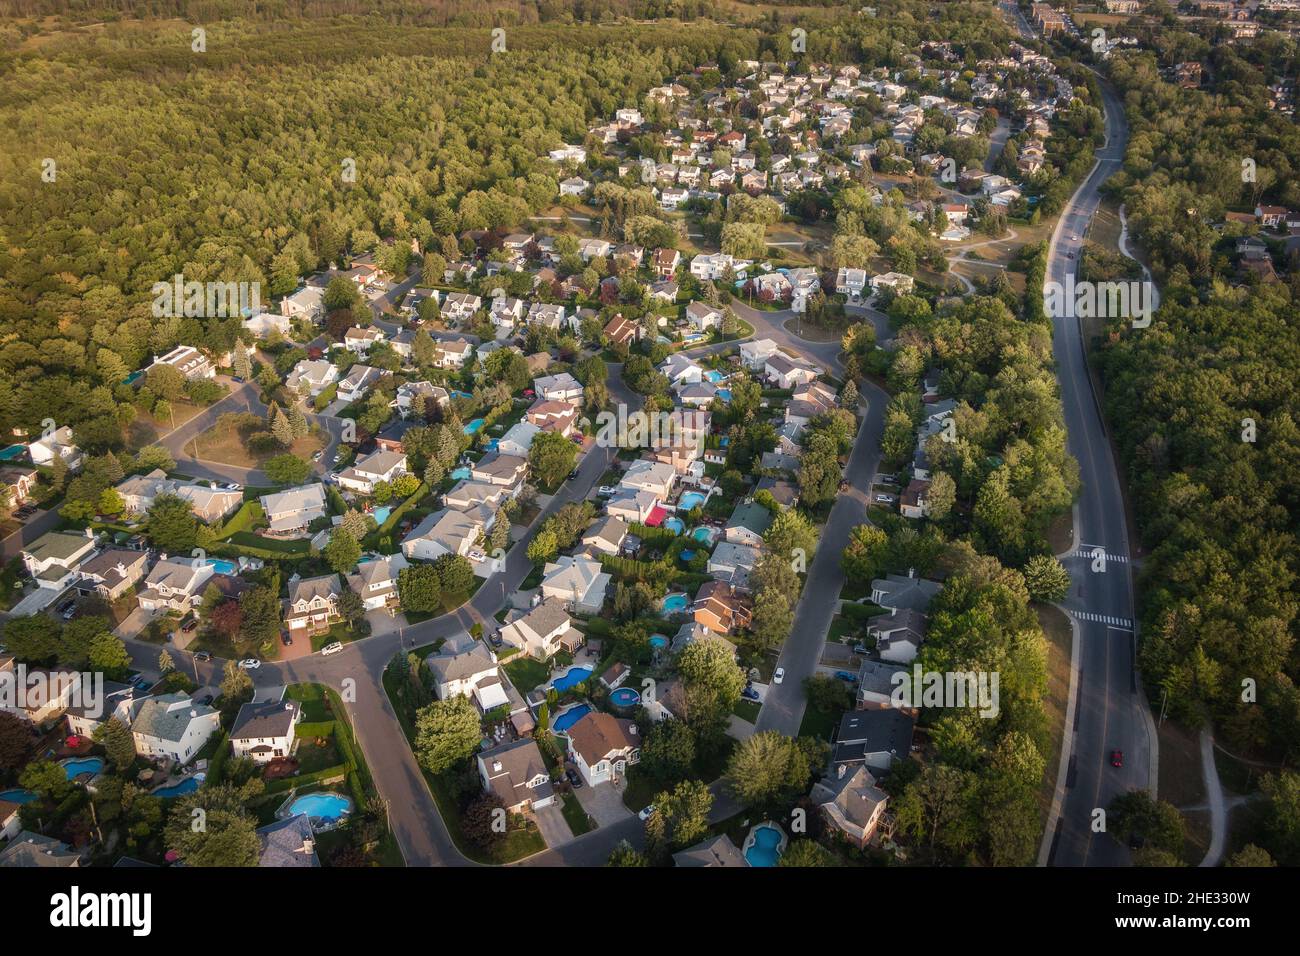 Vue aérienne des maisons et des rues dans le beau quartier résidentiel de Montréal, Québec, Canada.Concept immobilier, immobilier et immobilier. Banque D'Images